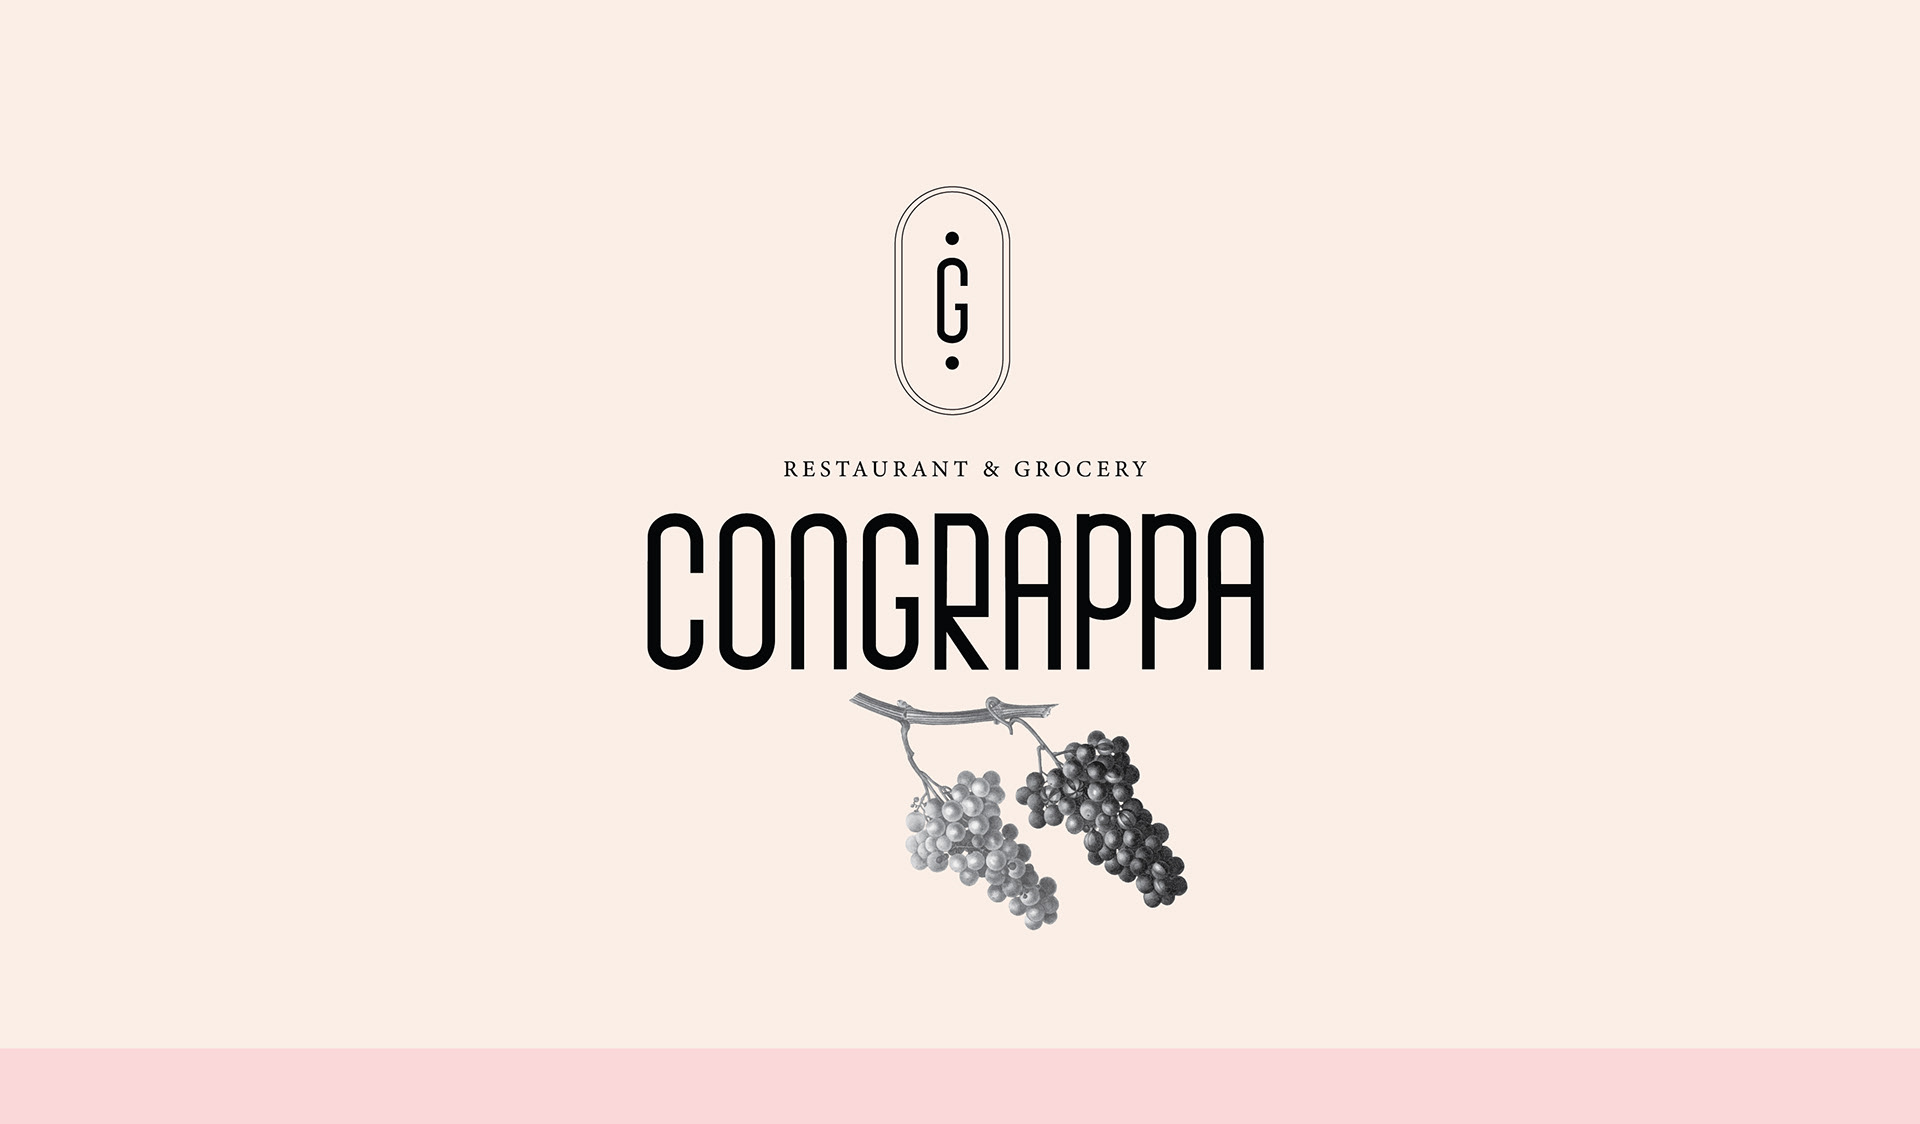 Monograph&Co. Creates Brand Identity for Congrappa-Restaurant